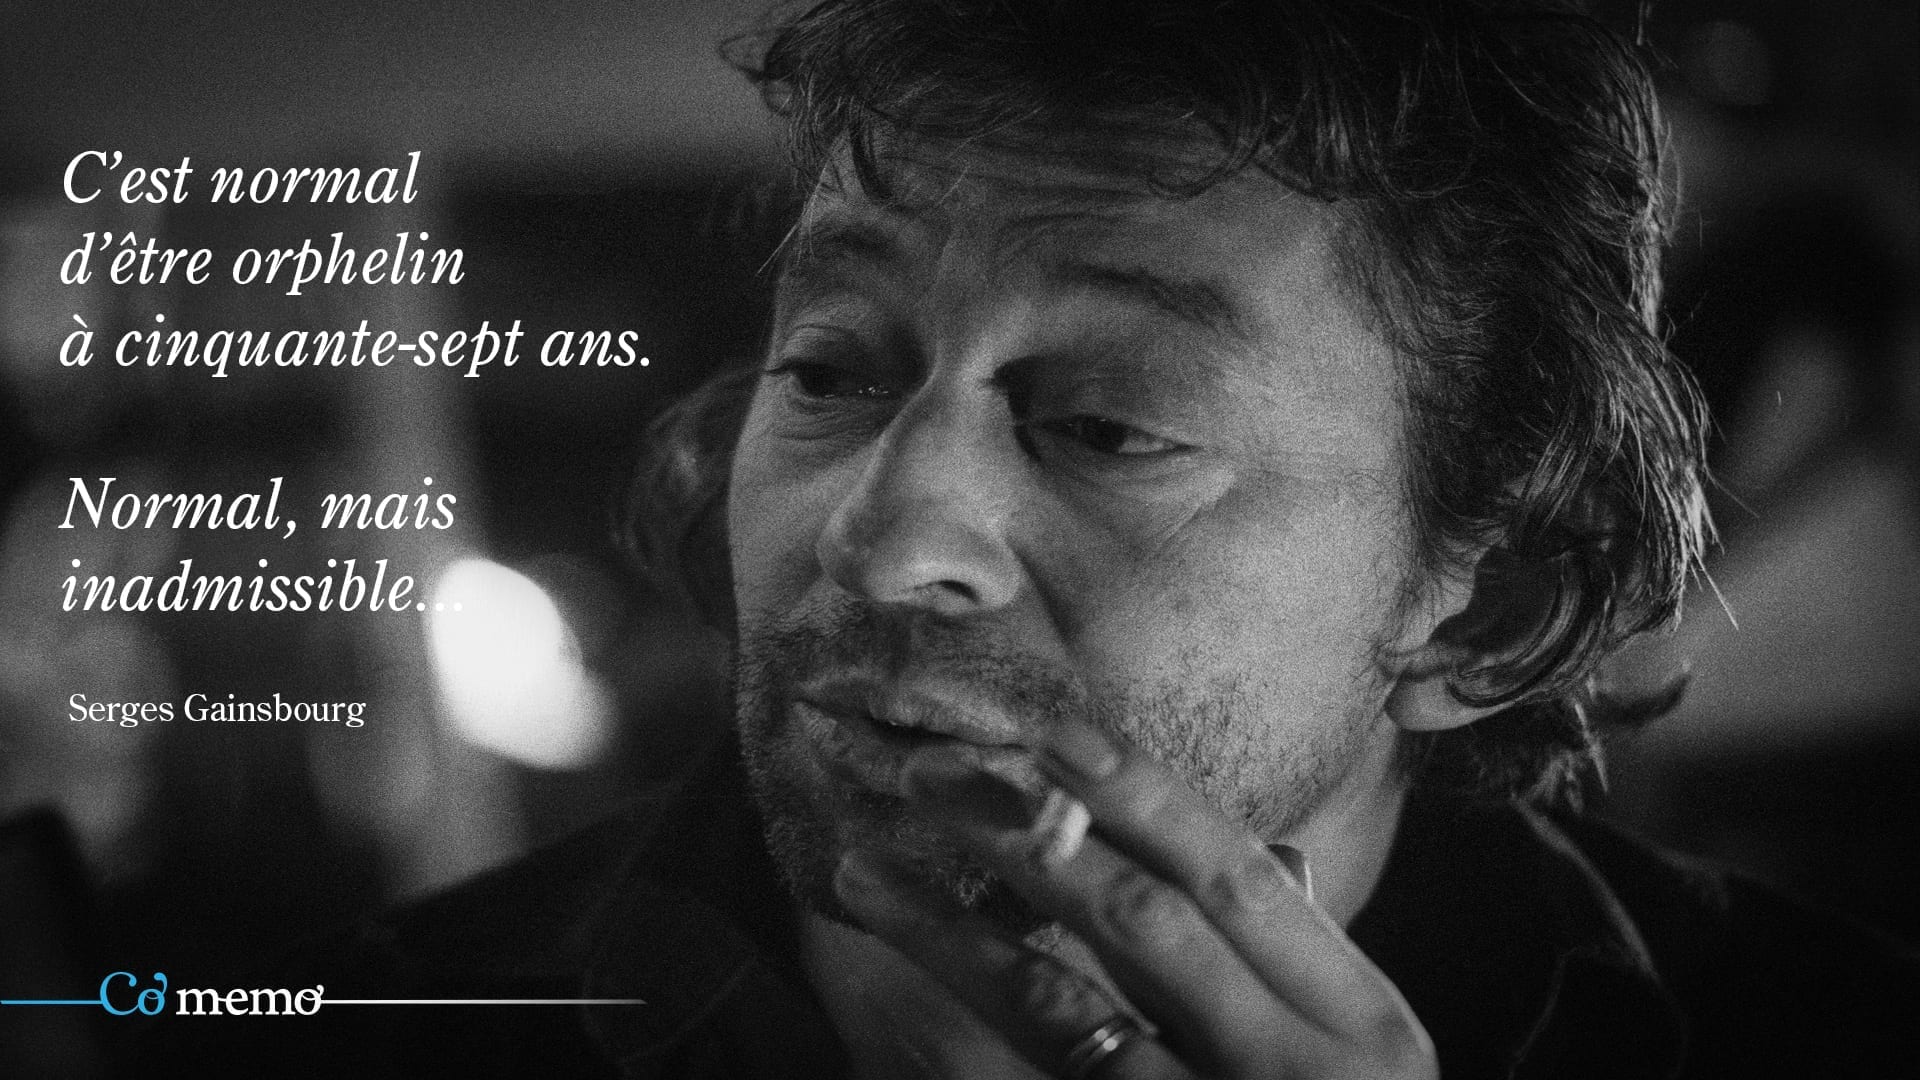 Serge Gainsbourg - Wikipedia